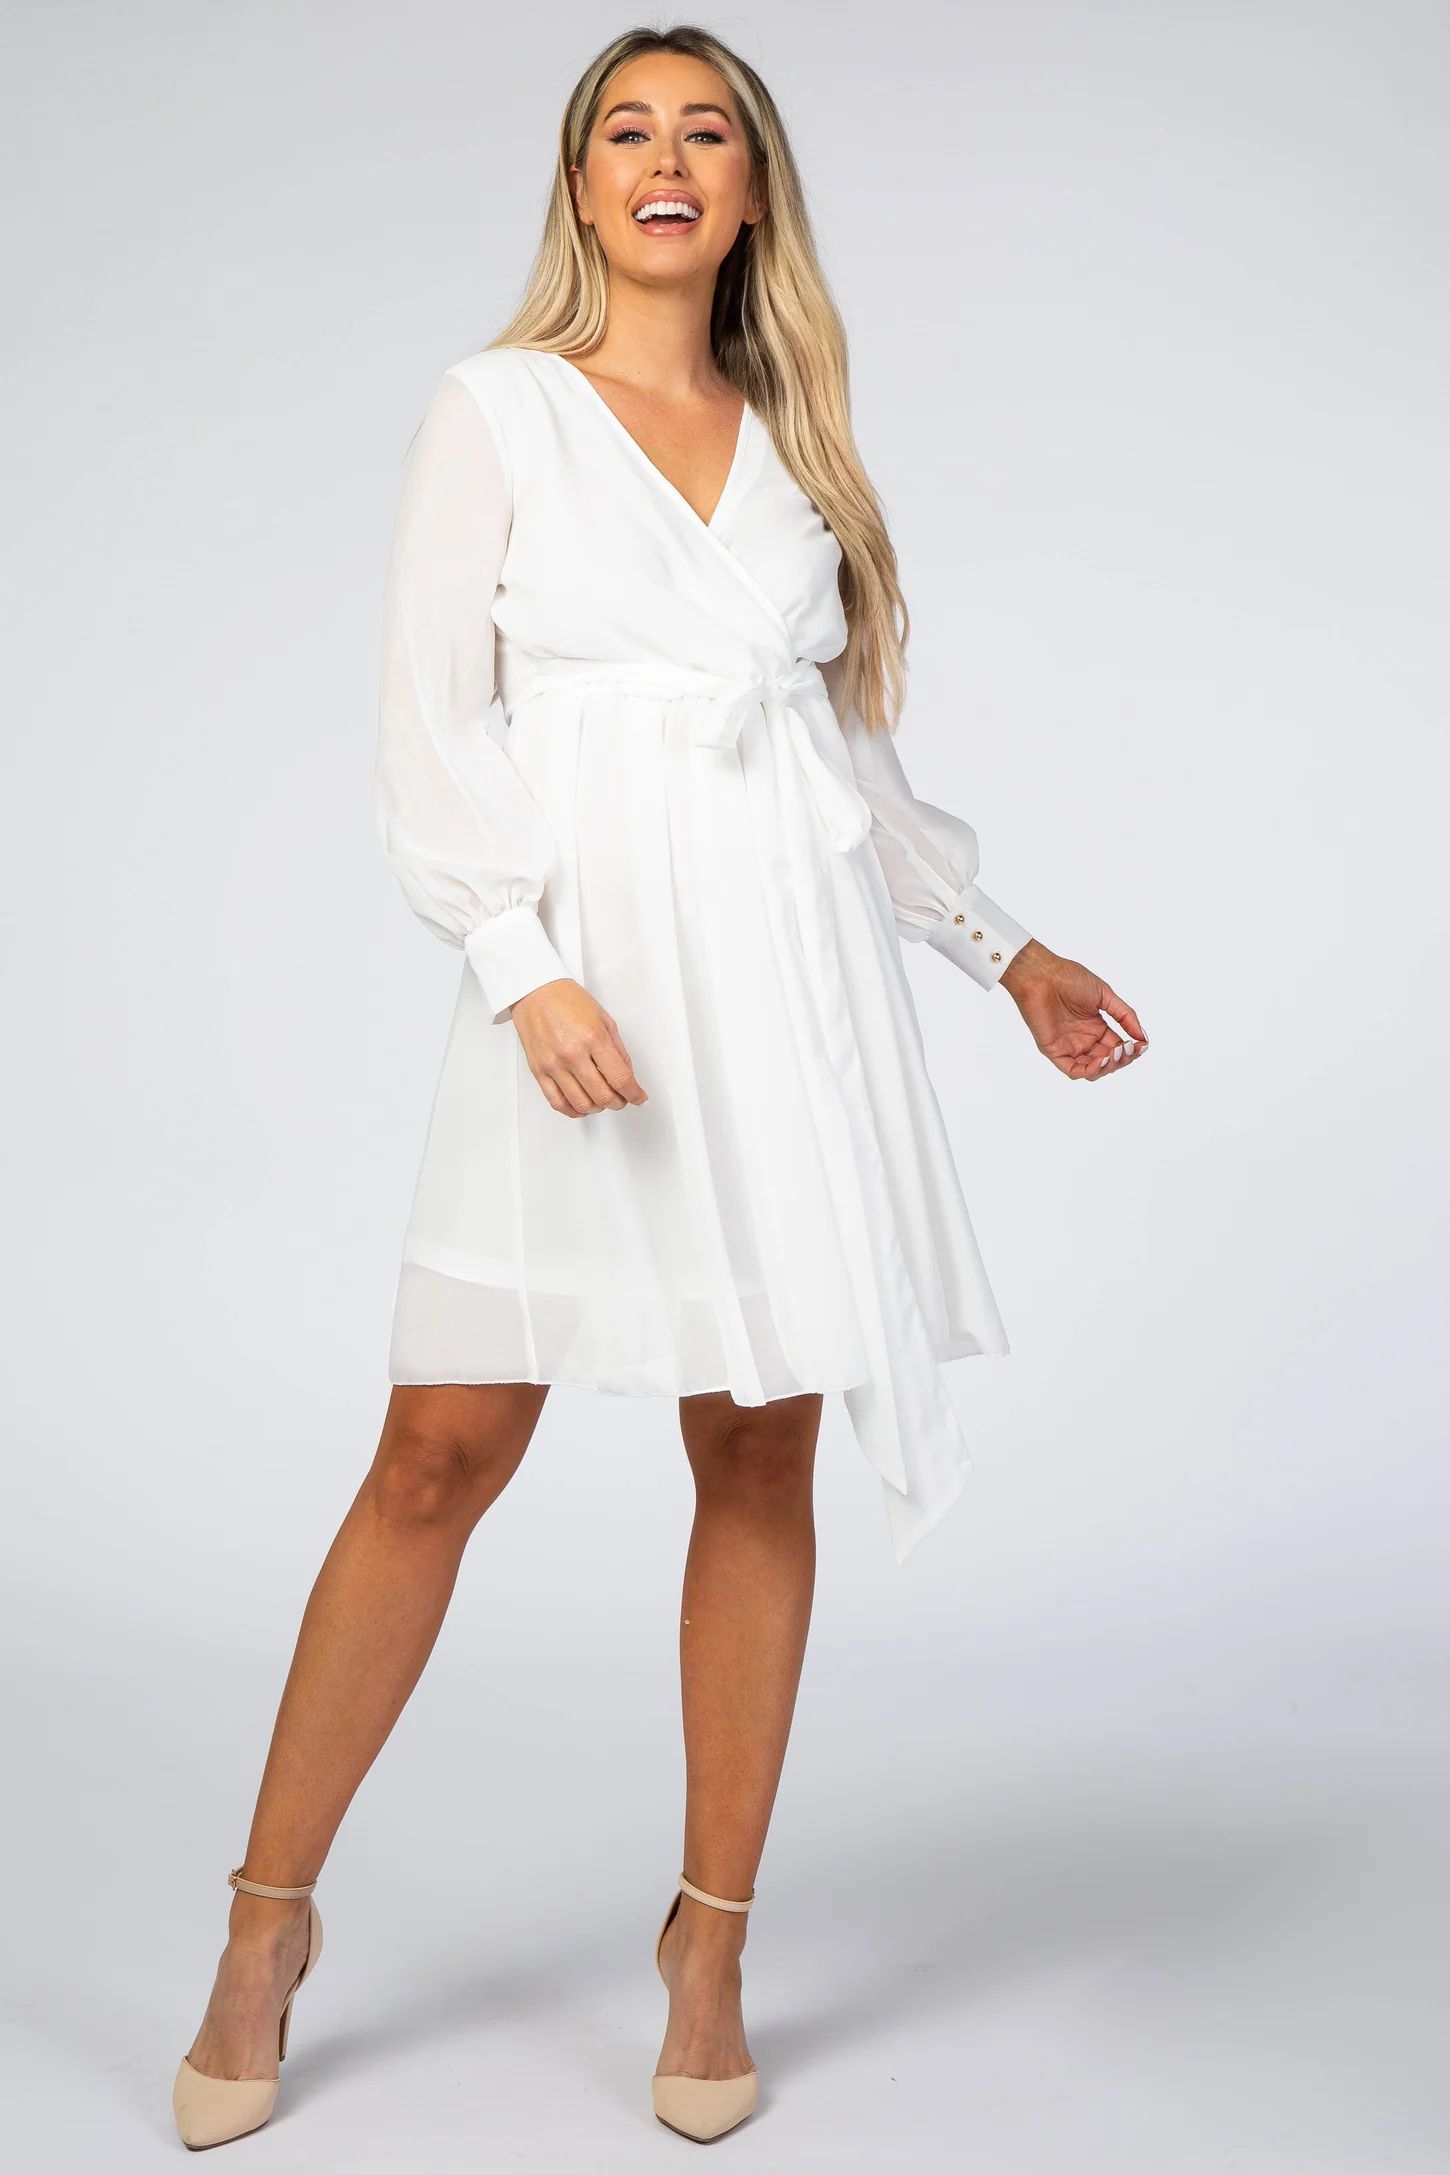 White Chiffon Maternity Wrap Dress | PinkBlush Maternity